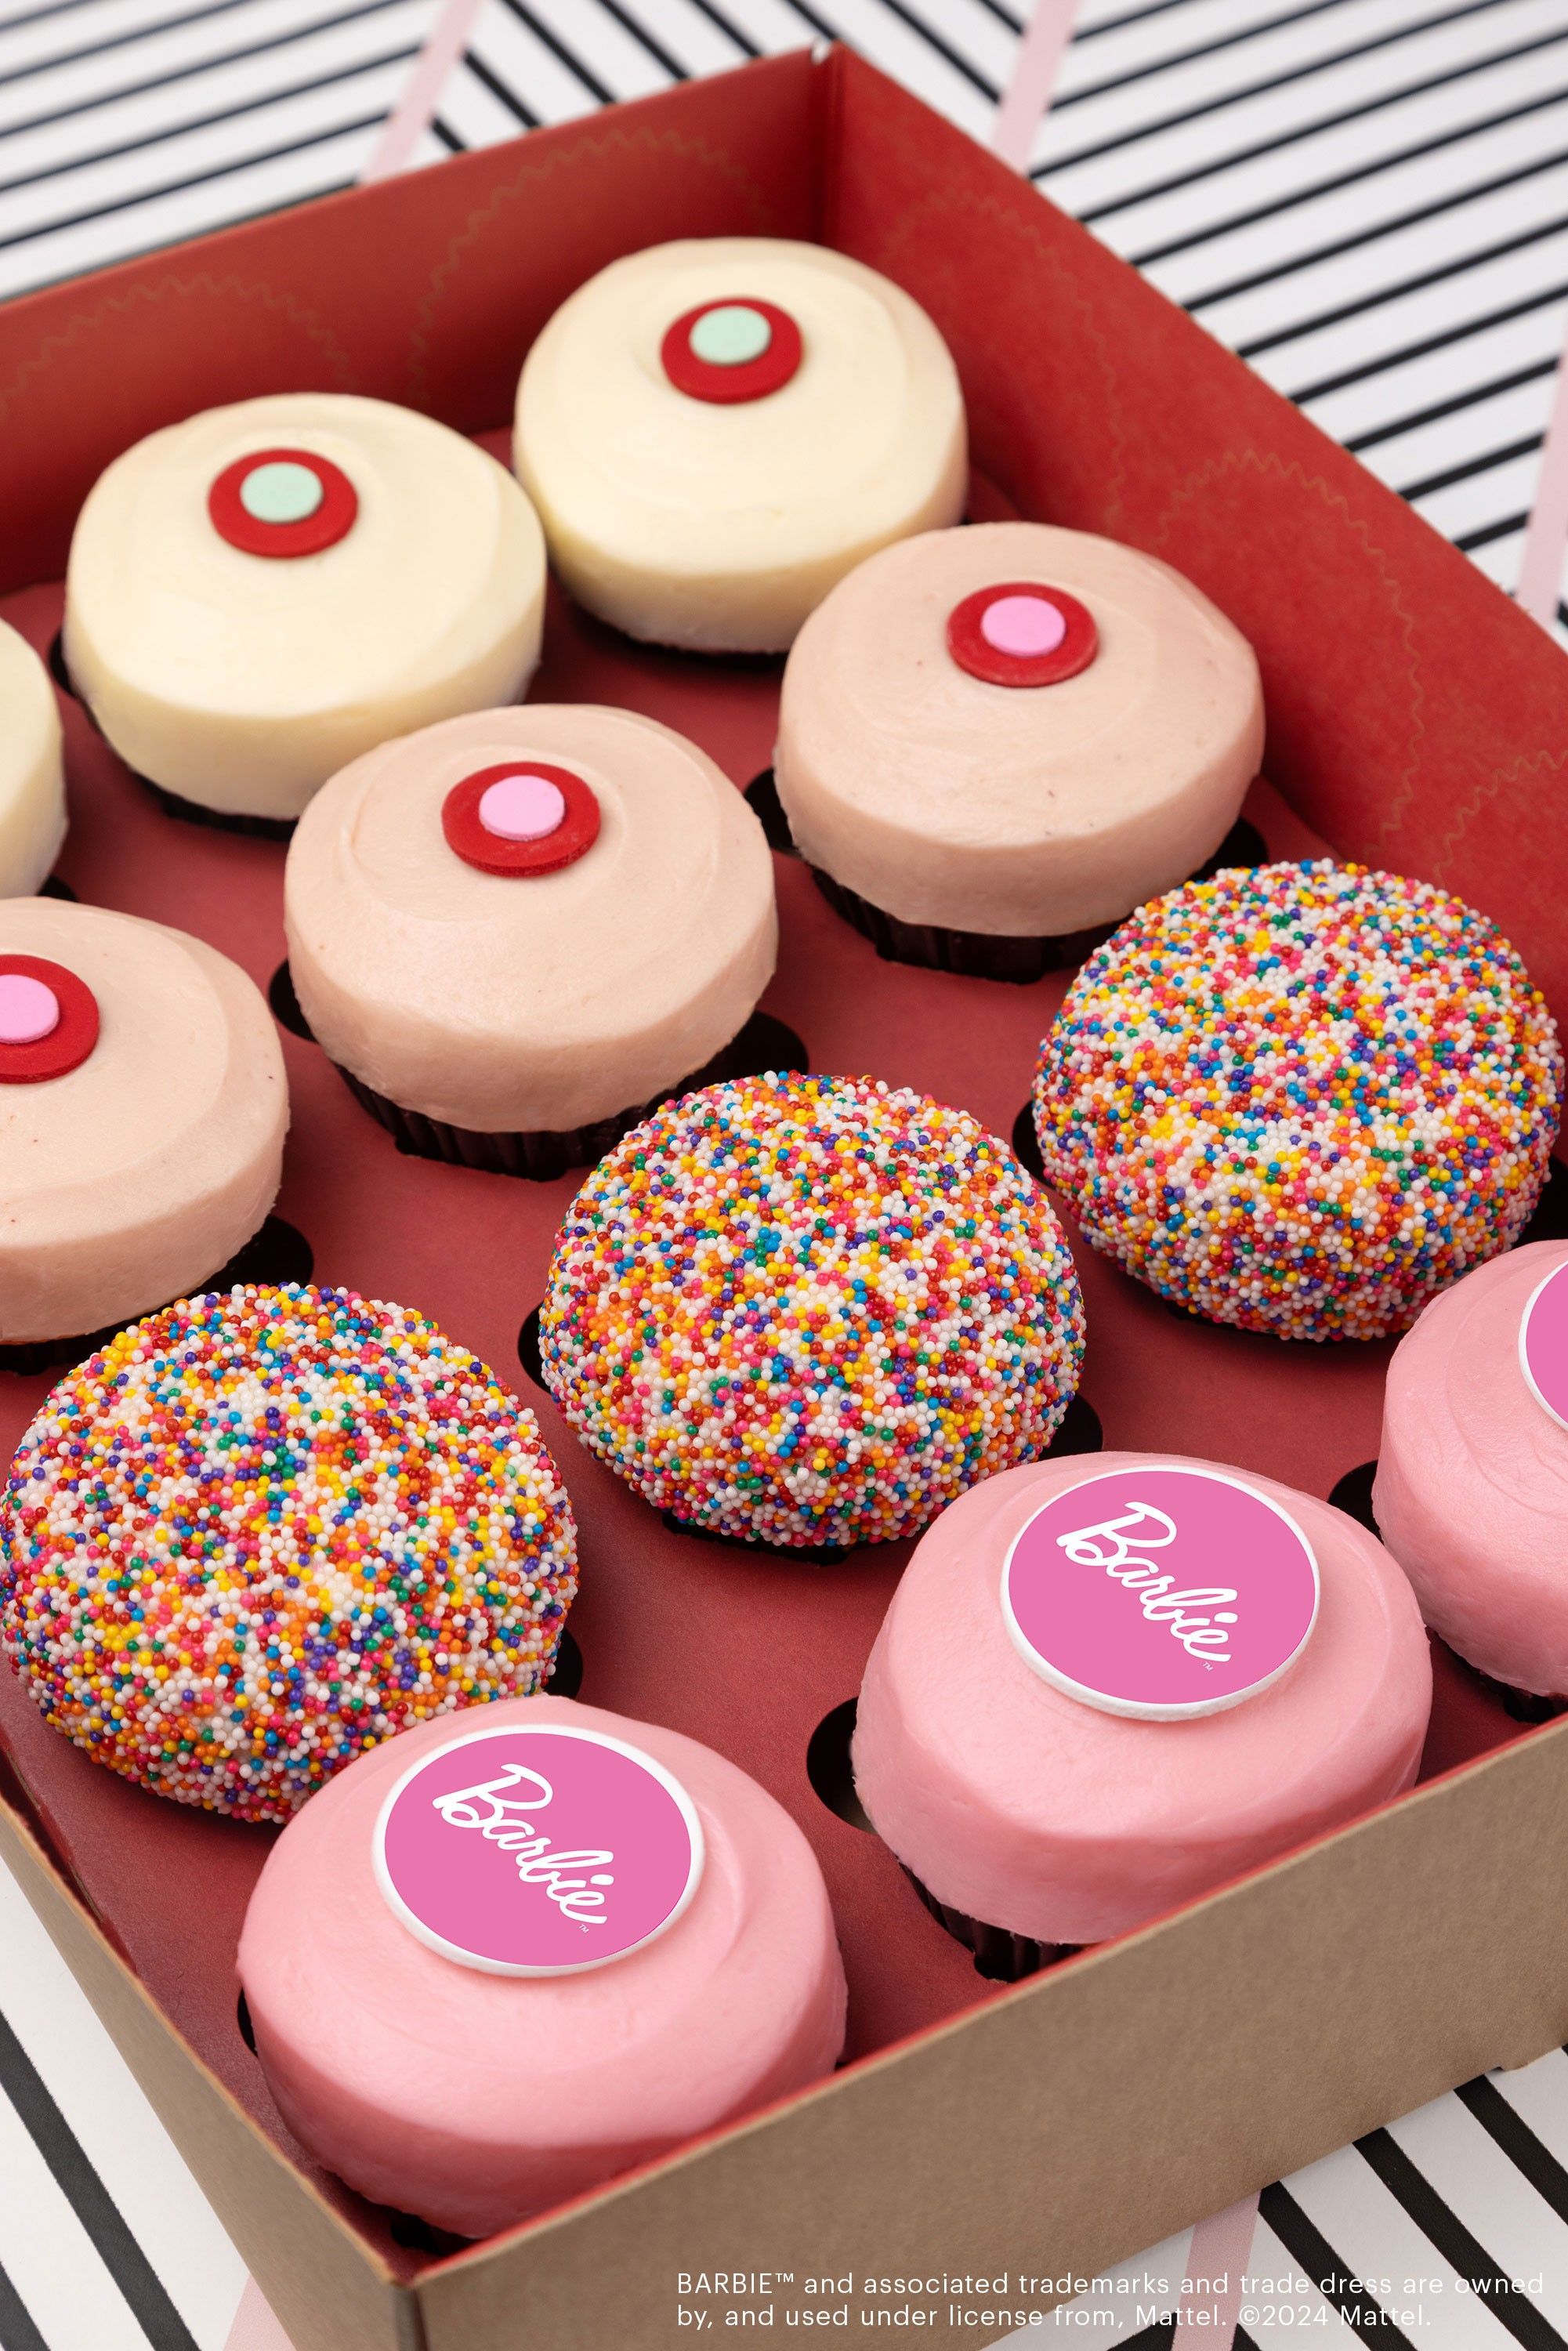 Sprinkles Cupcakes x Barbie